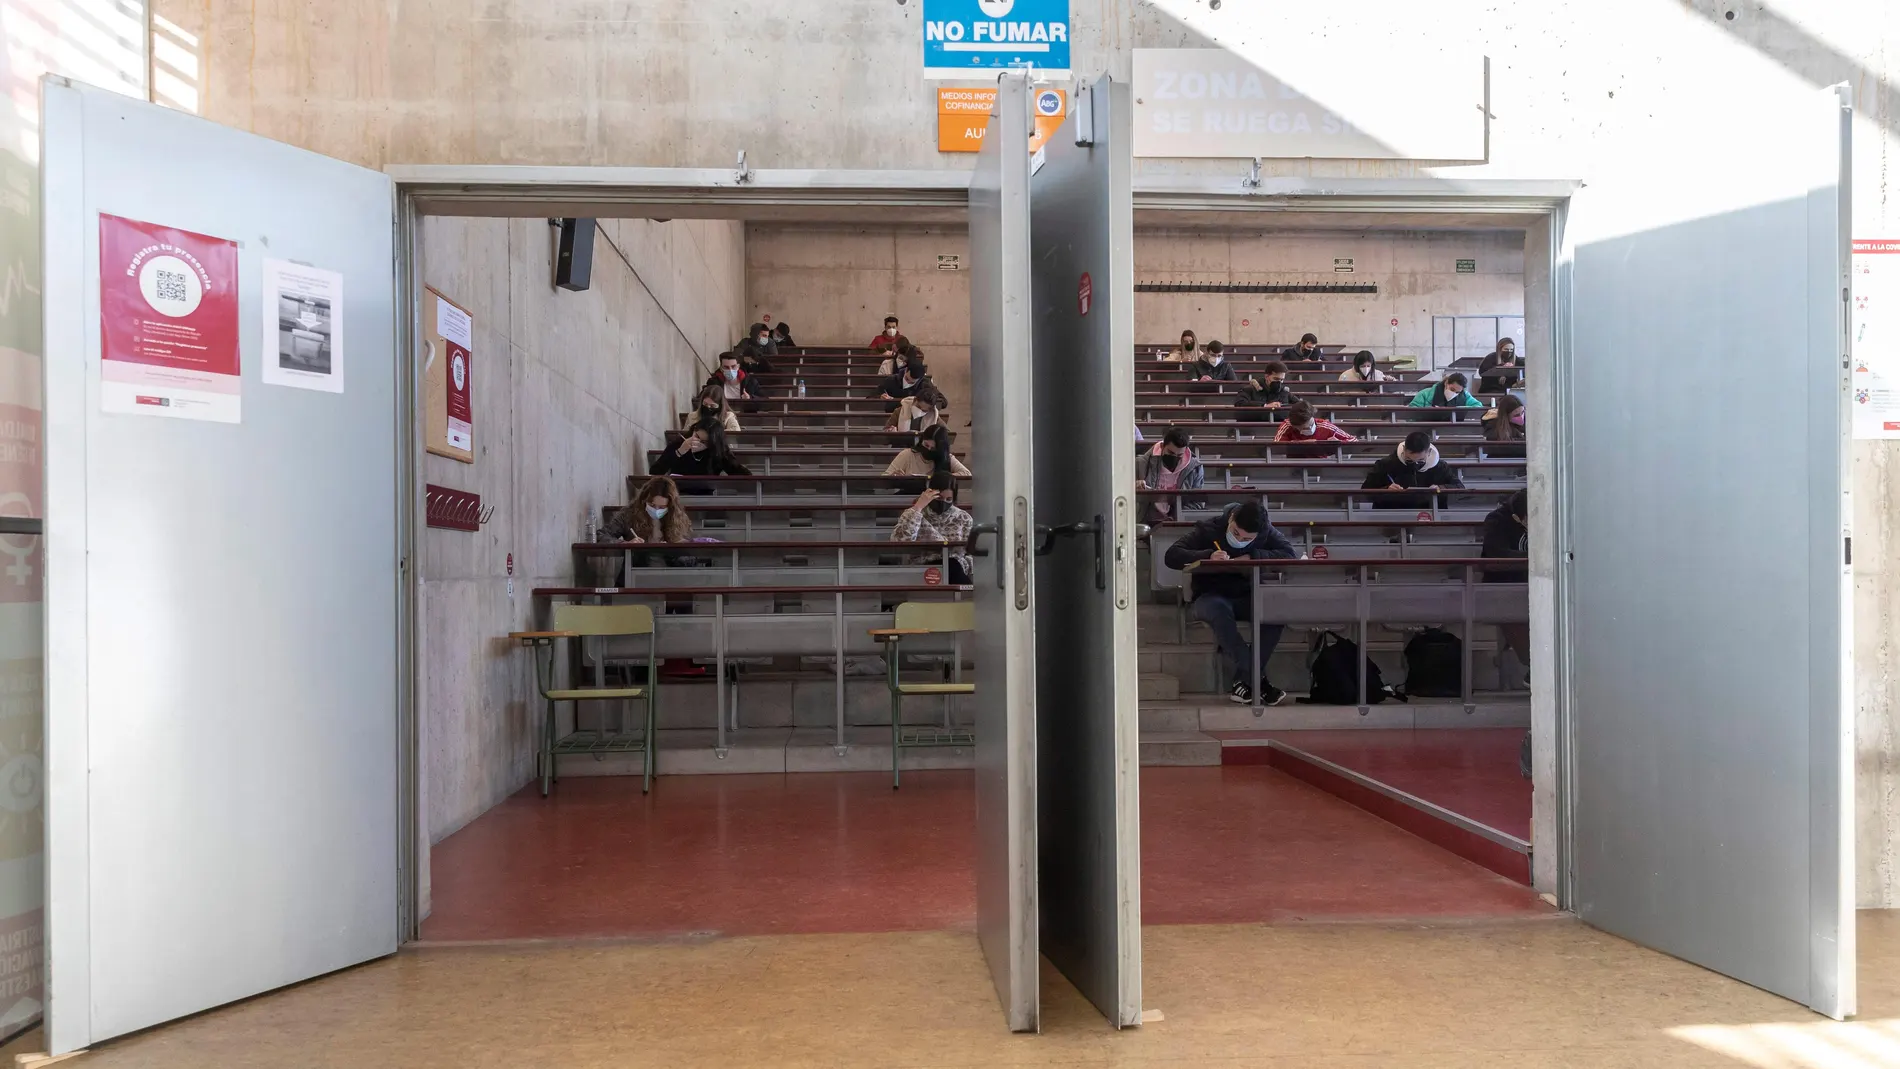 Los estudiantes murcianos piden la suspensión de las clases presenciales